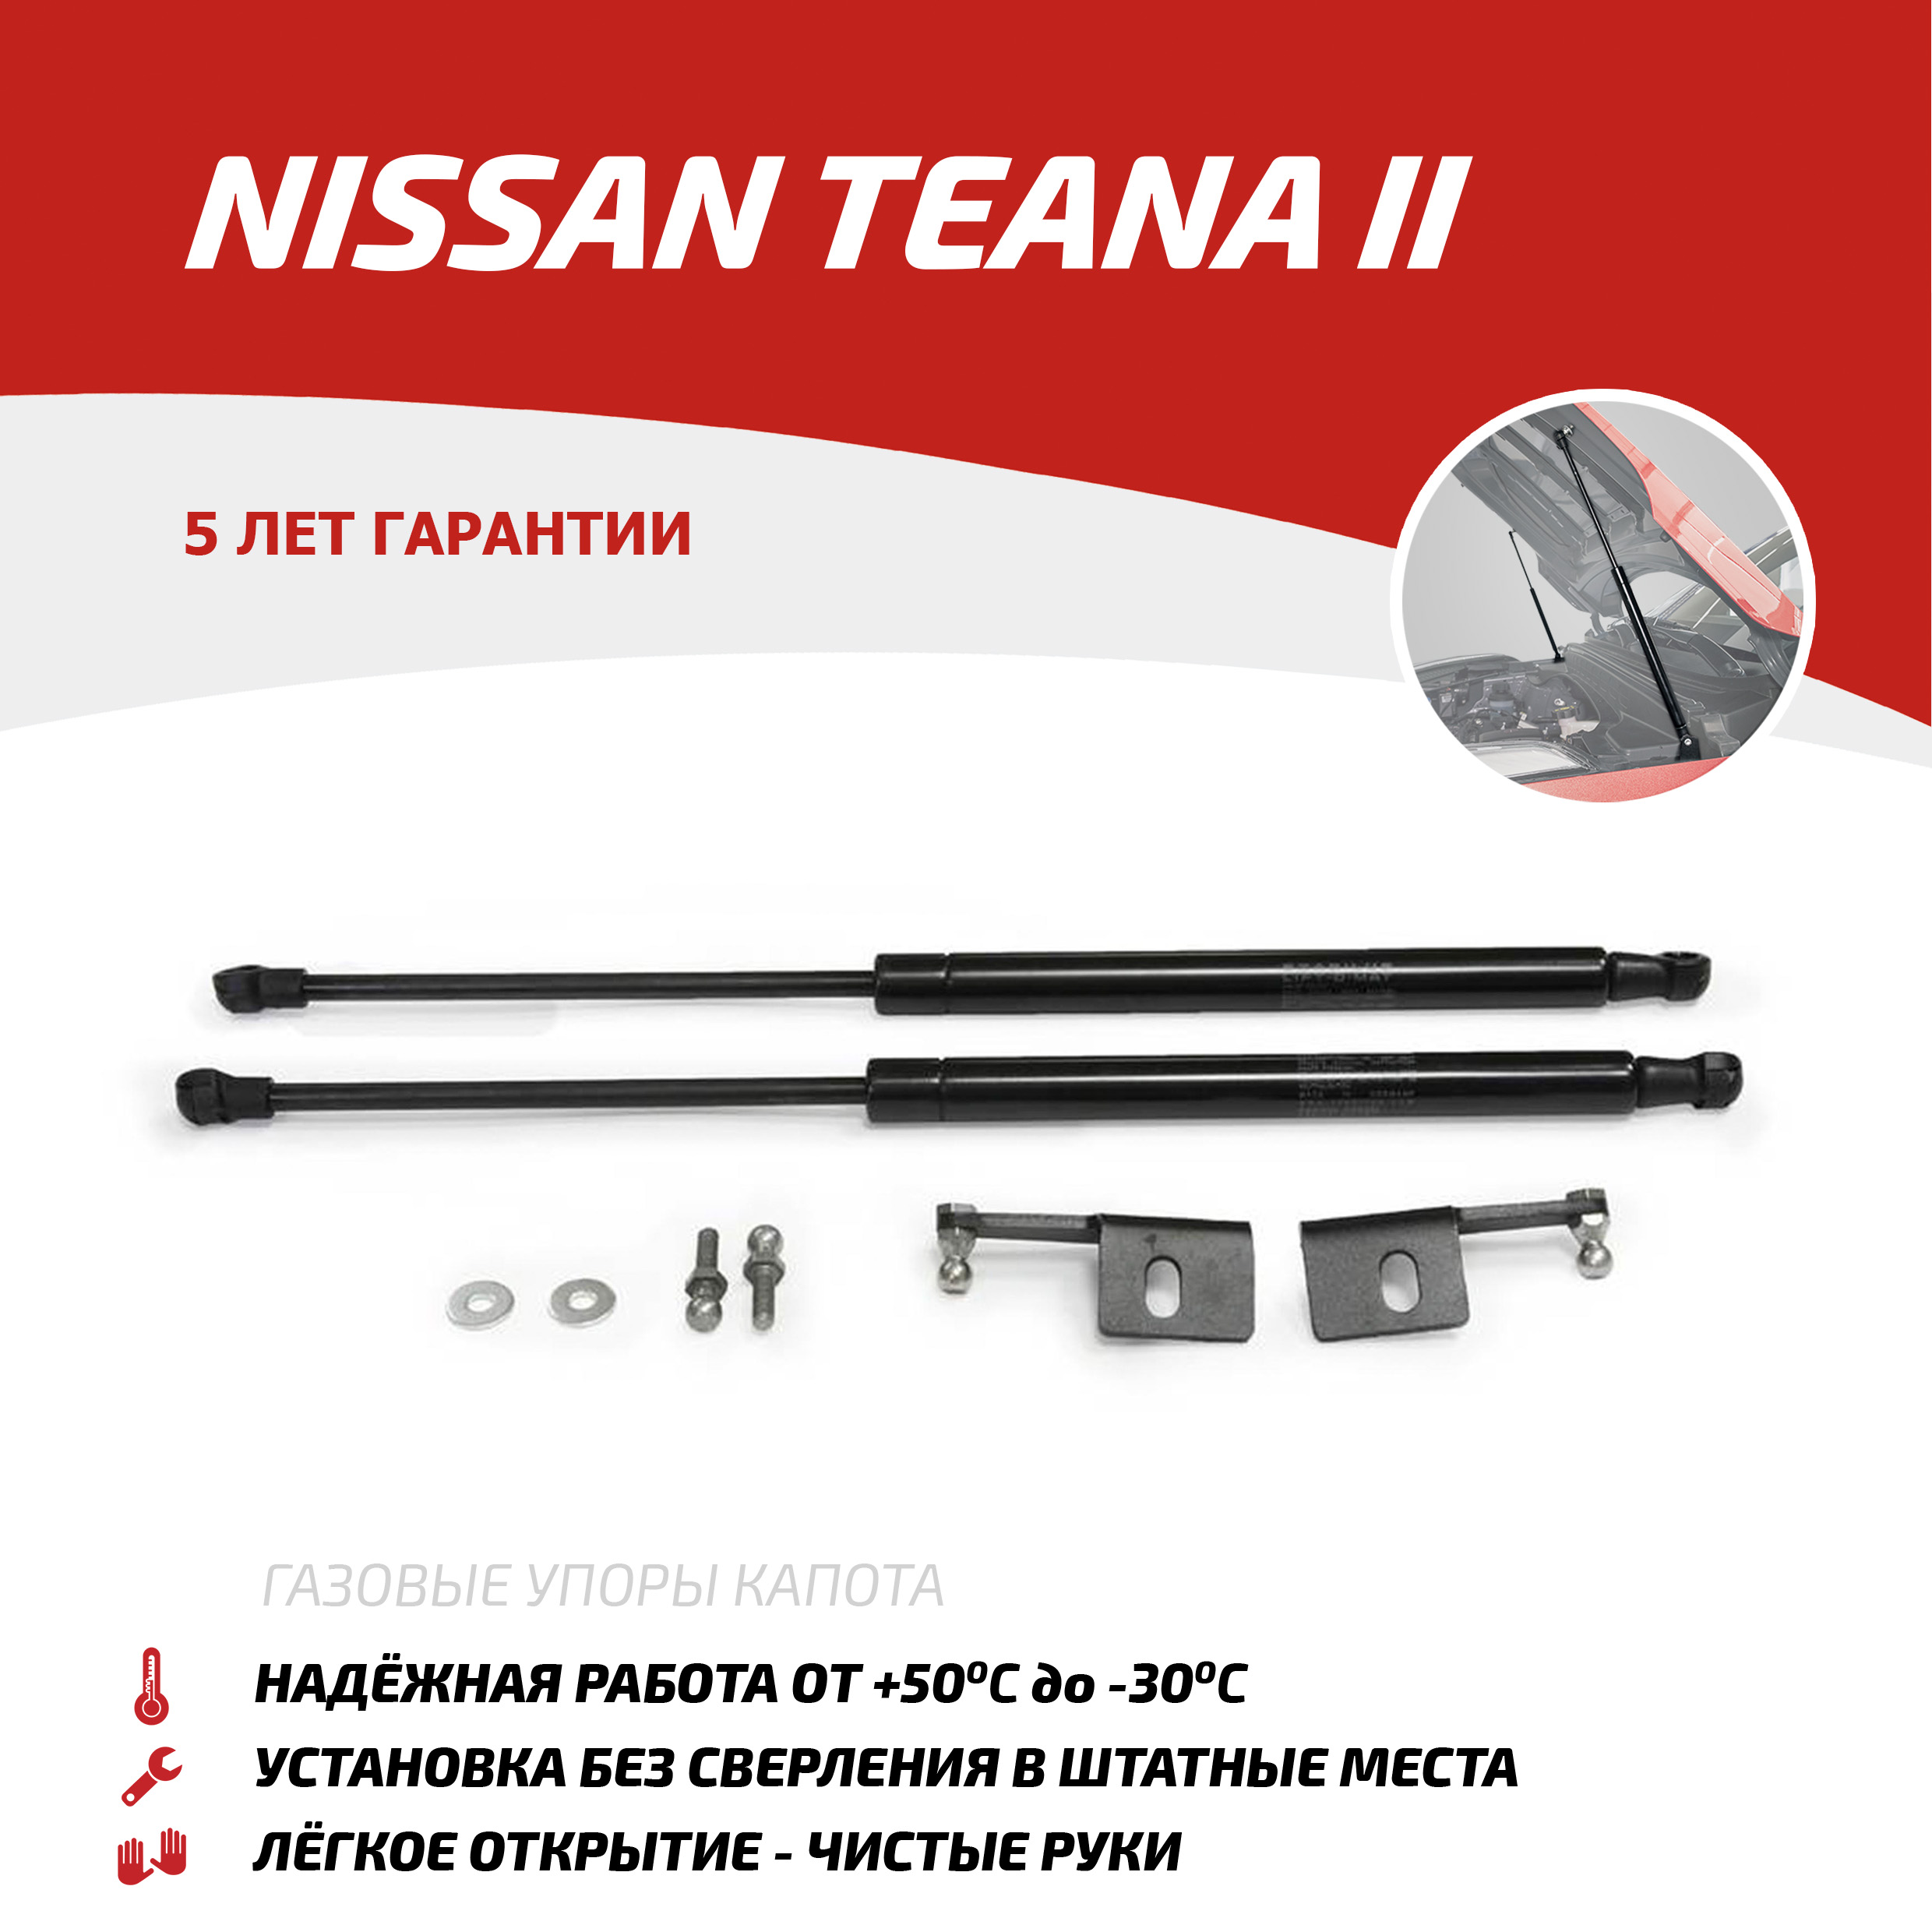 Газовые упоры капота АвтоУпор для Nissan Teana II 2008-2014, 2 шт., UNITEA012